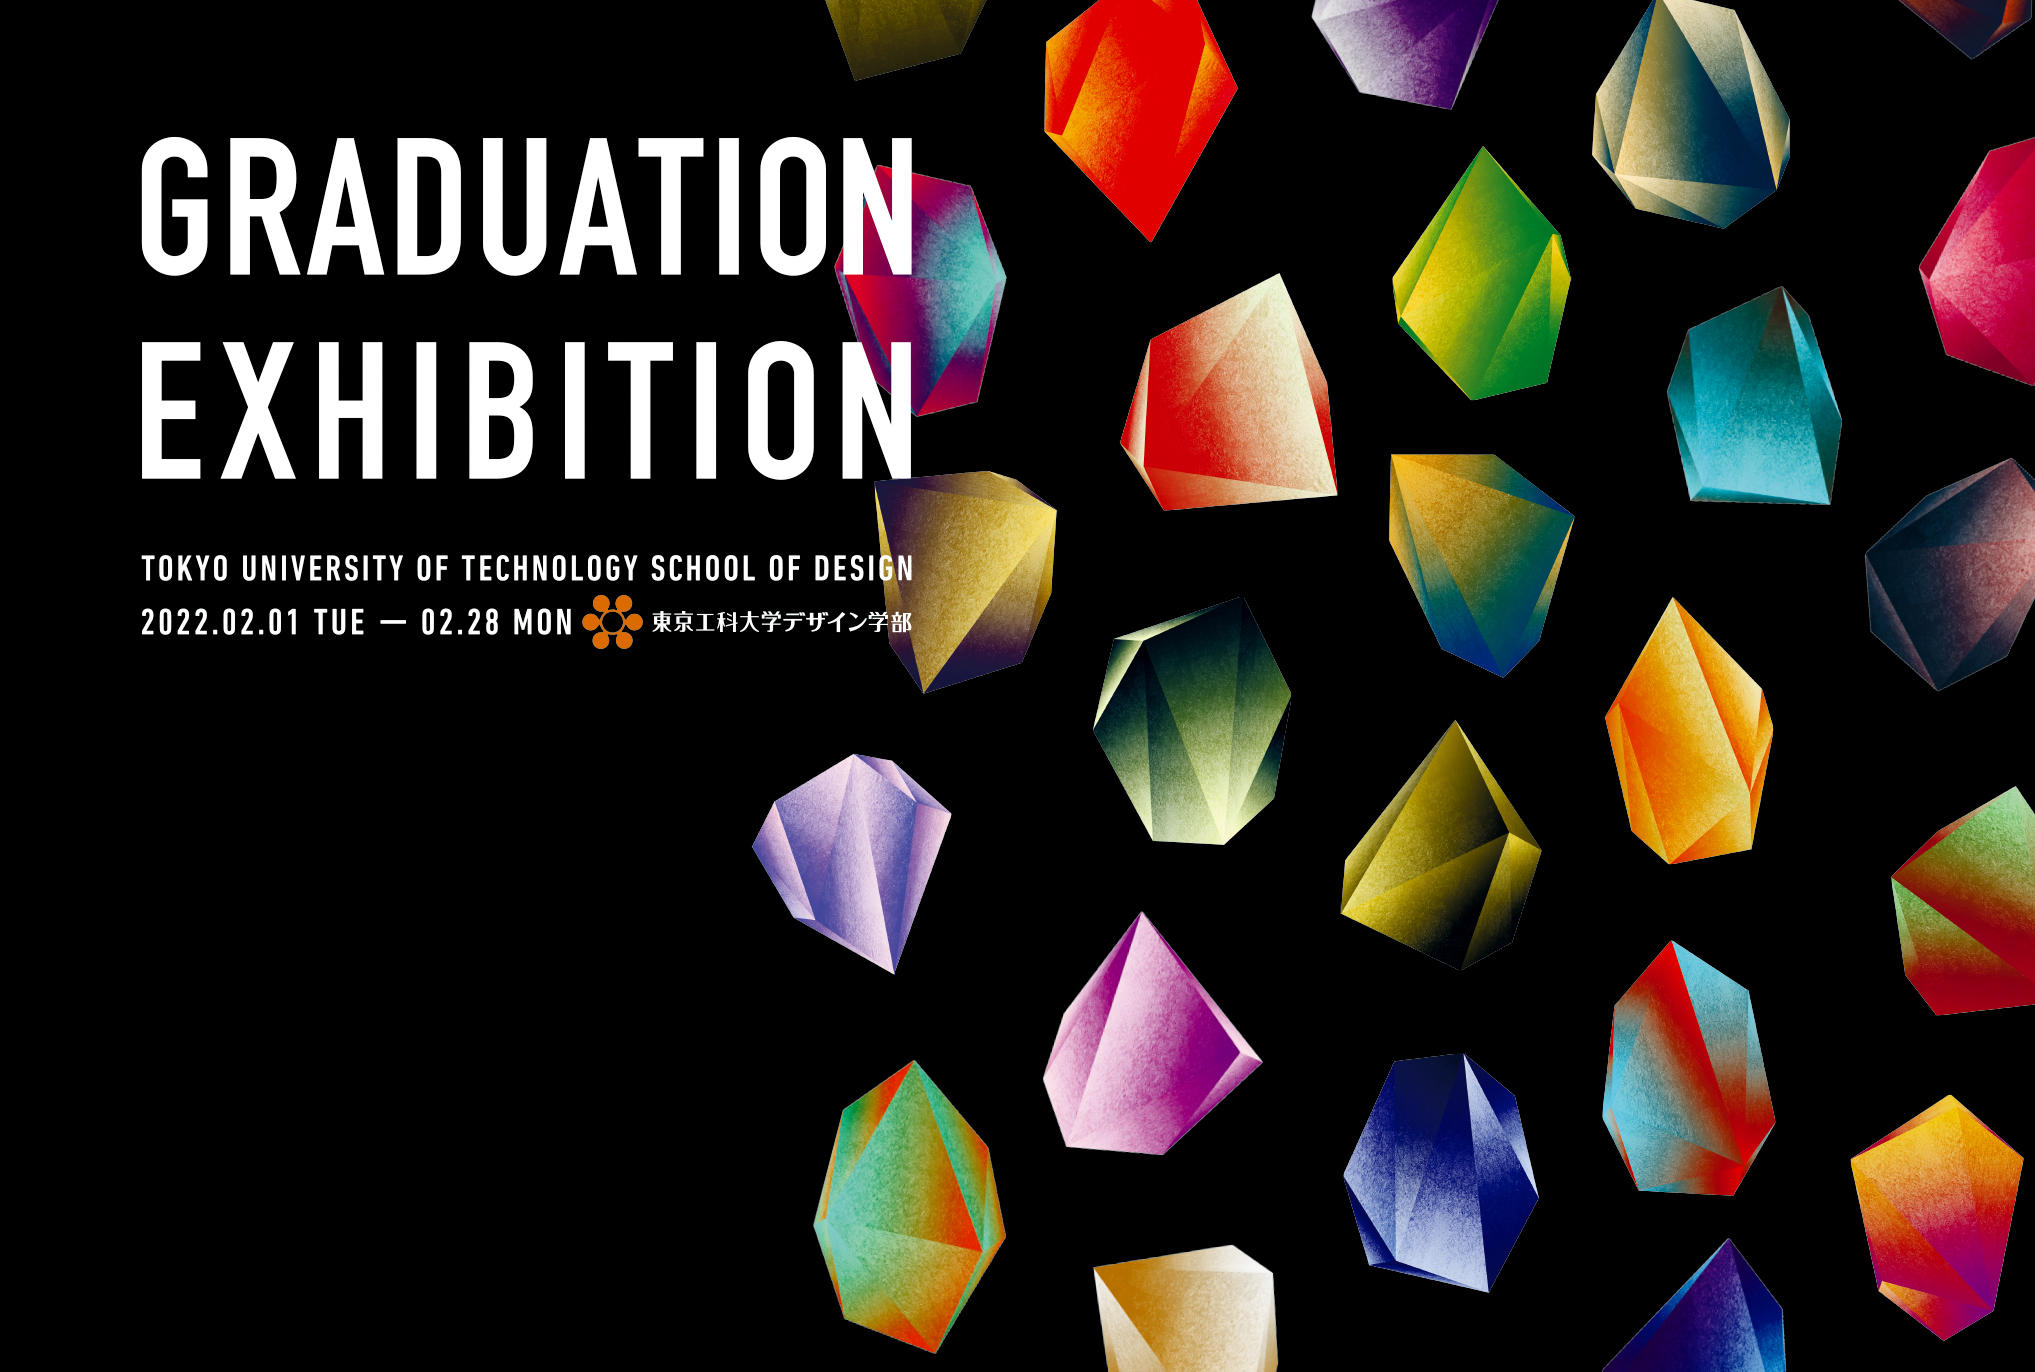 「2021年度 卒業制作オンライン展示」を特設サイトで期間限定公開 -- 東京工科大学デザイン学部